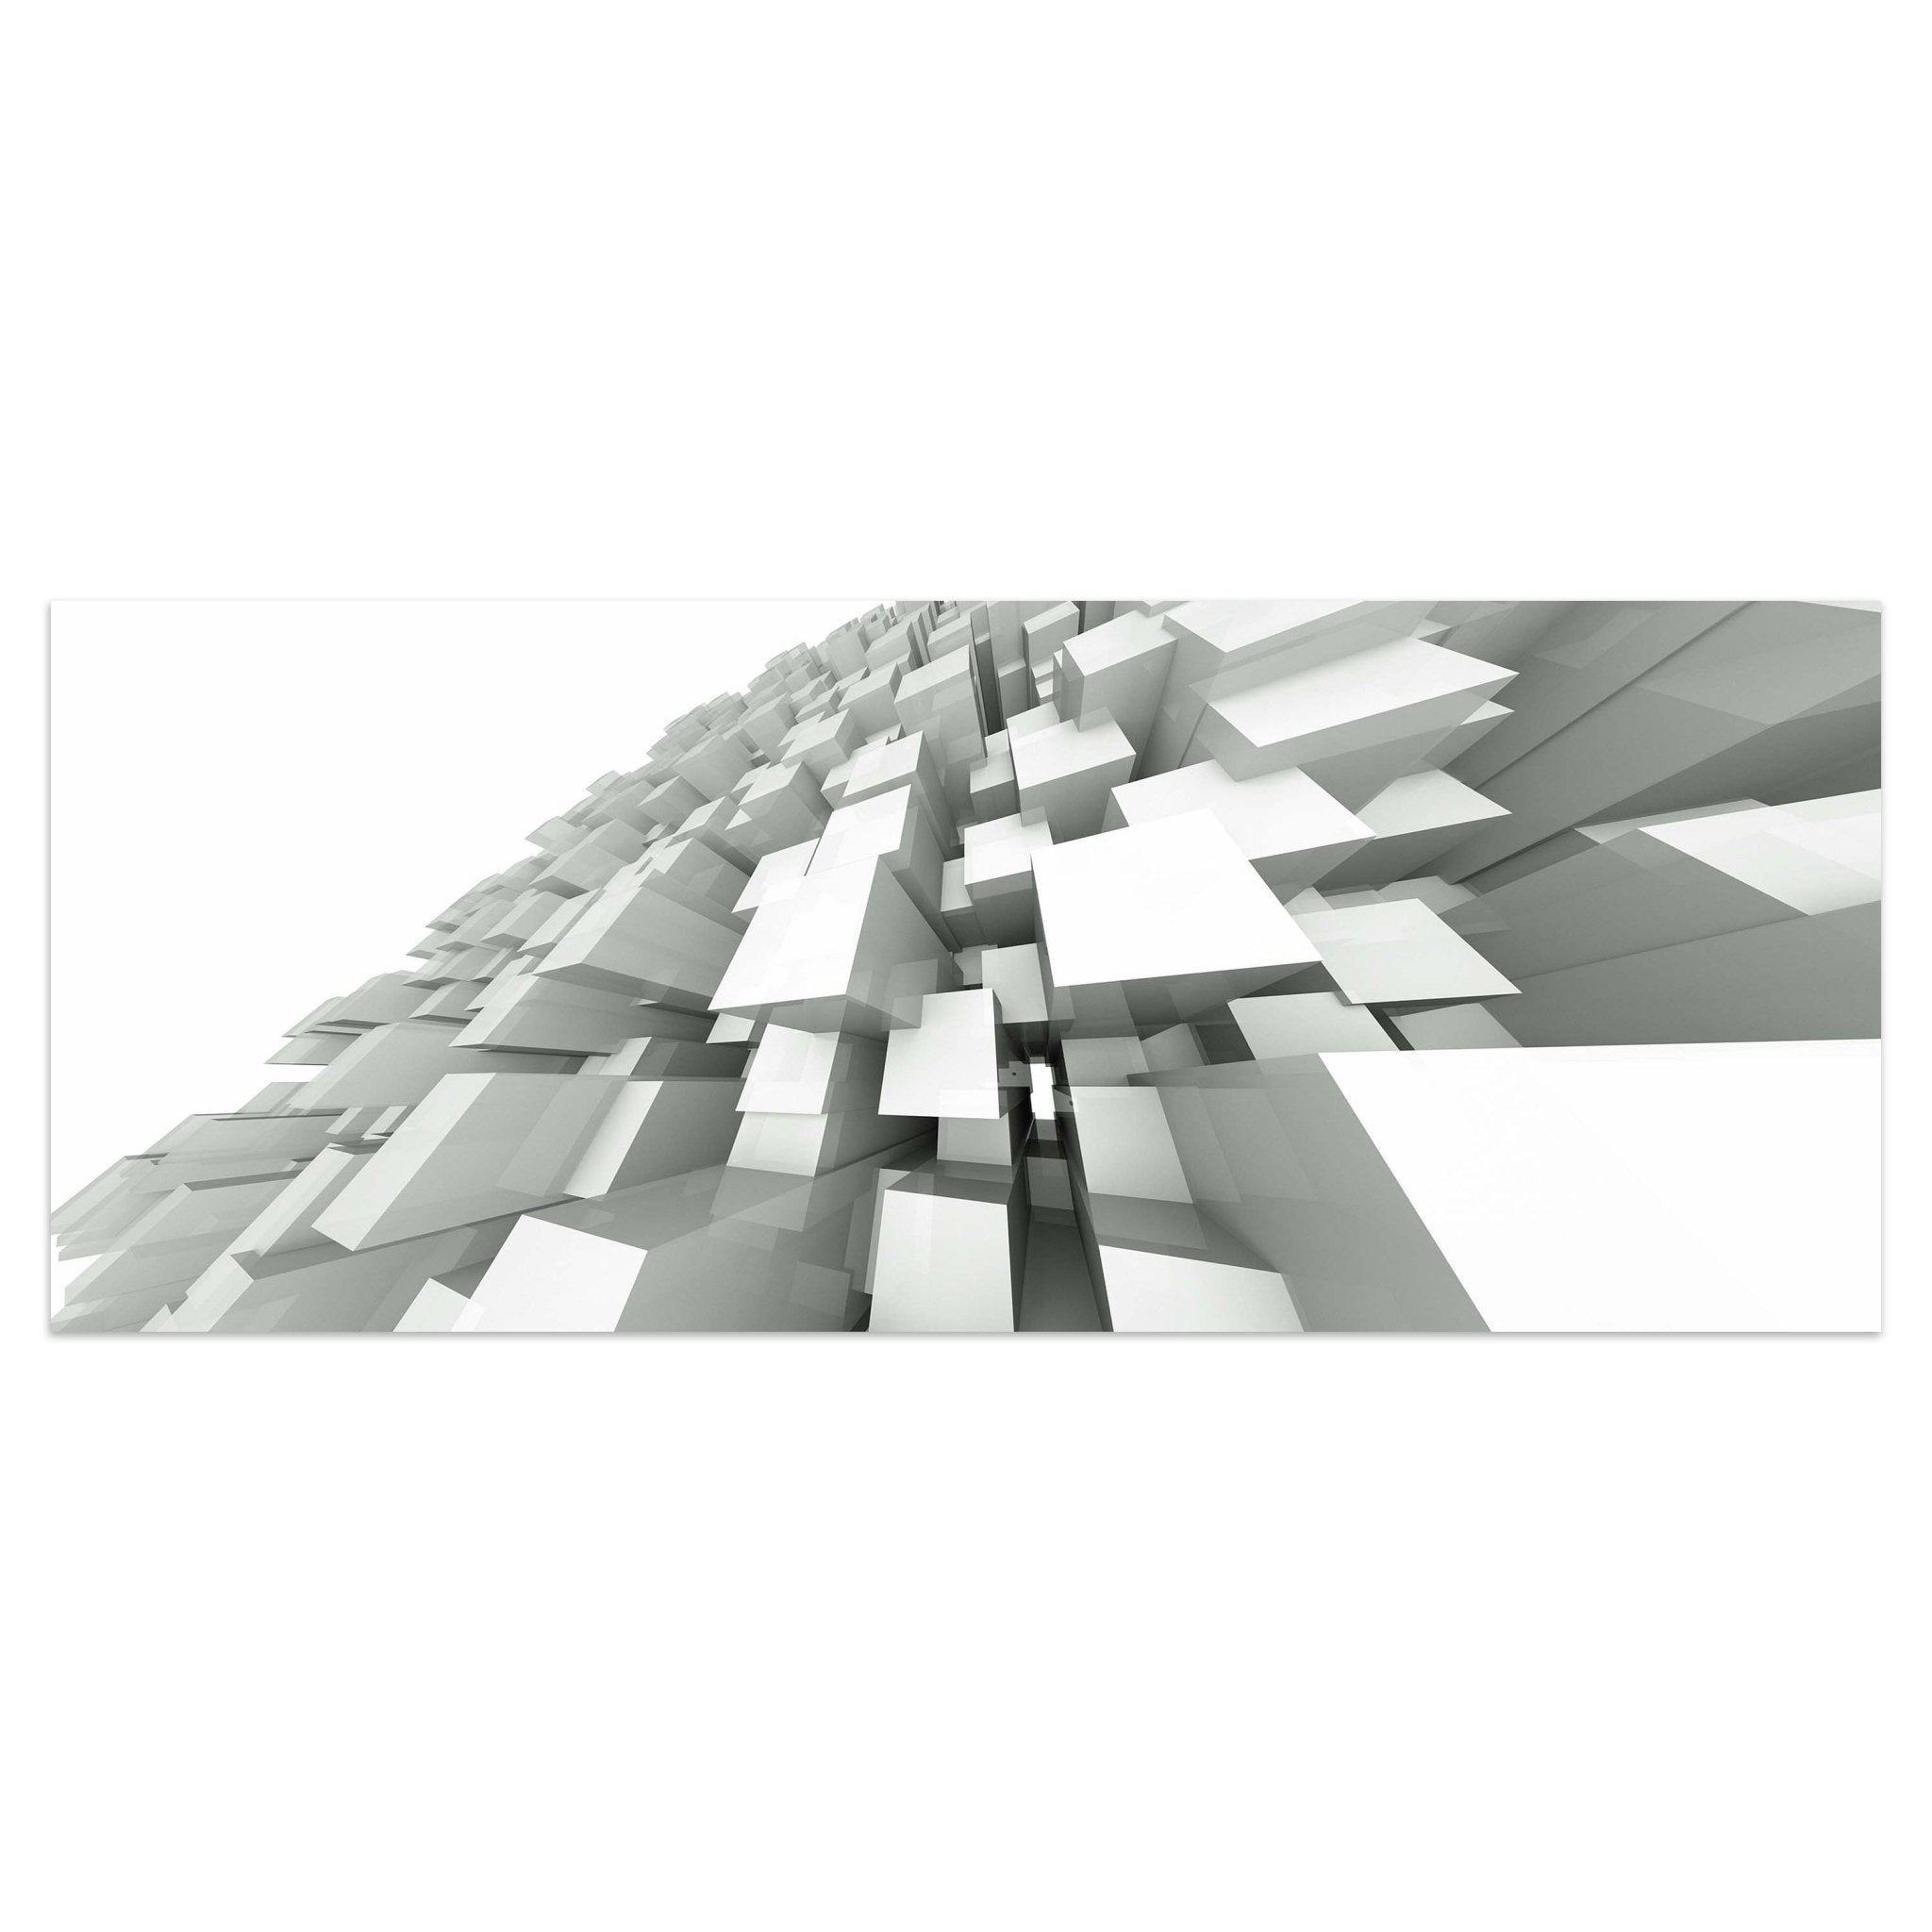 Leinwandbild 3D-Hintergrund mit quadratischen Strukturen M0766 kaufen - Bild 1